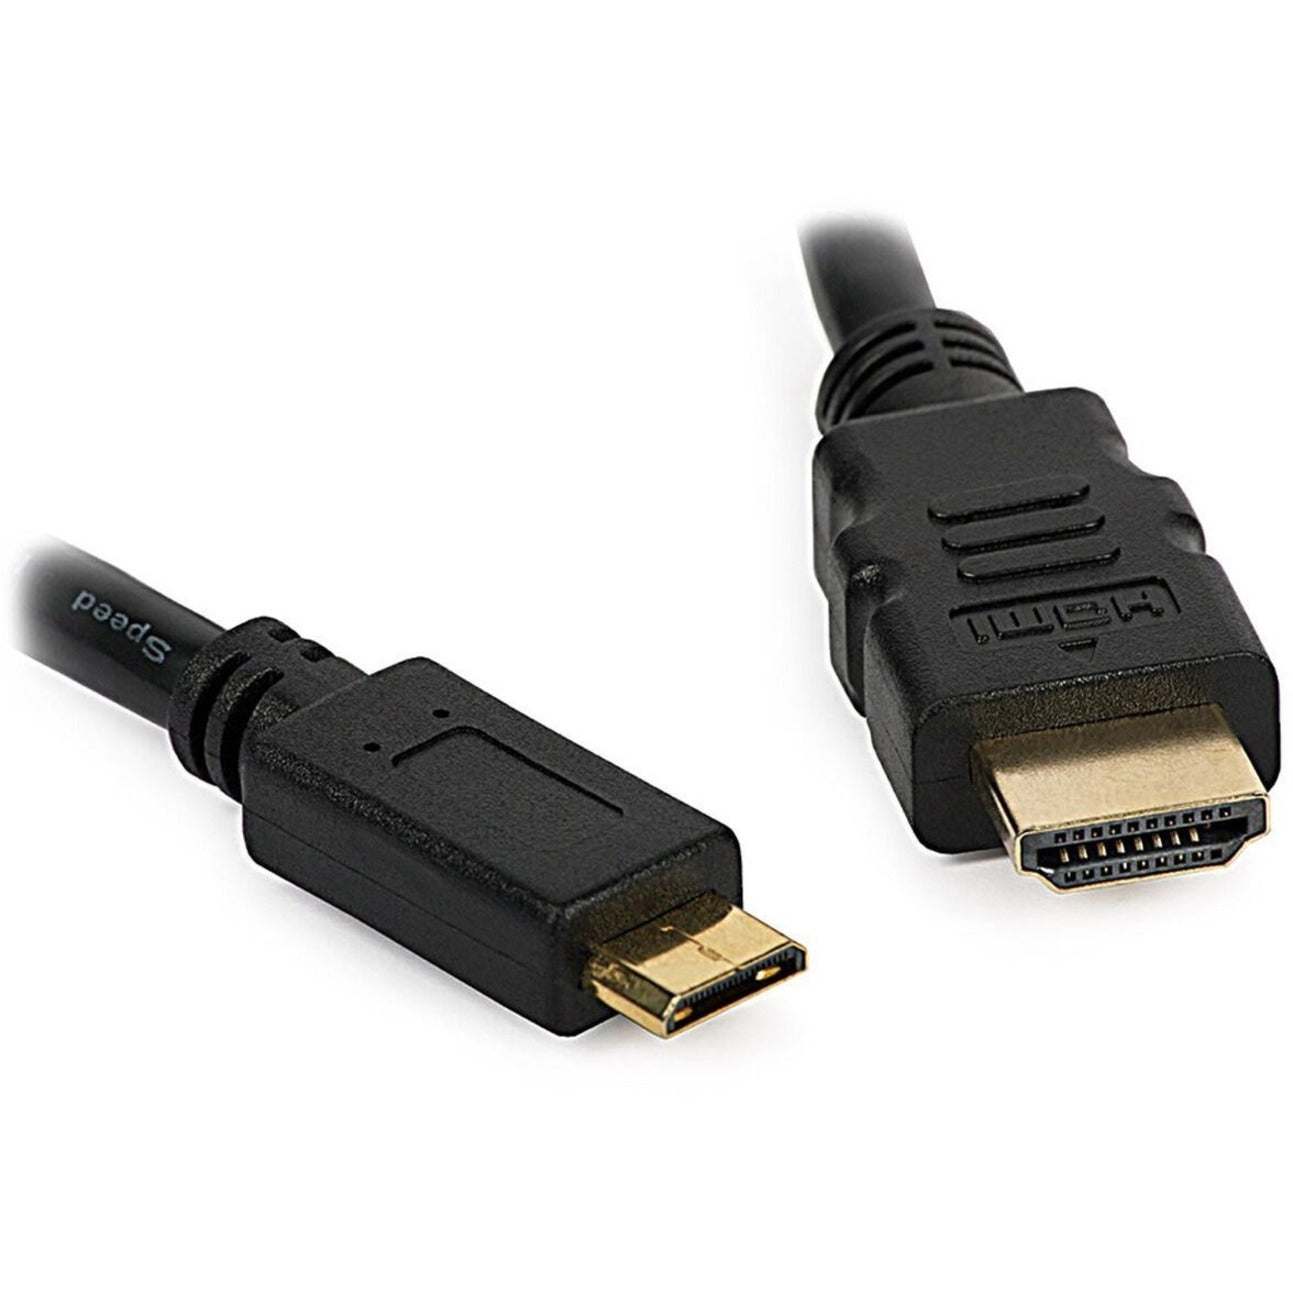 4XEM 4XHDMIMINI6FT 6FT Mini HDMI To HDMI M/M Adapter Cable 10.2 Gbit/s Data Transfer Rate Gold Plated Connectors 4XEM - Câble d'adaptateur Mini HDMI vers HDMI M/M de 6 pi taux de transfert de données de 102 Gbit/s connecteurs plaqués or